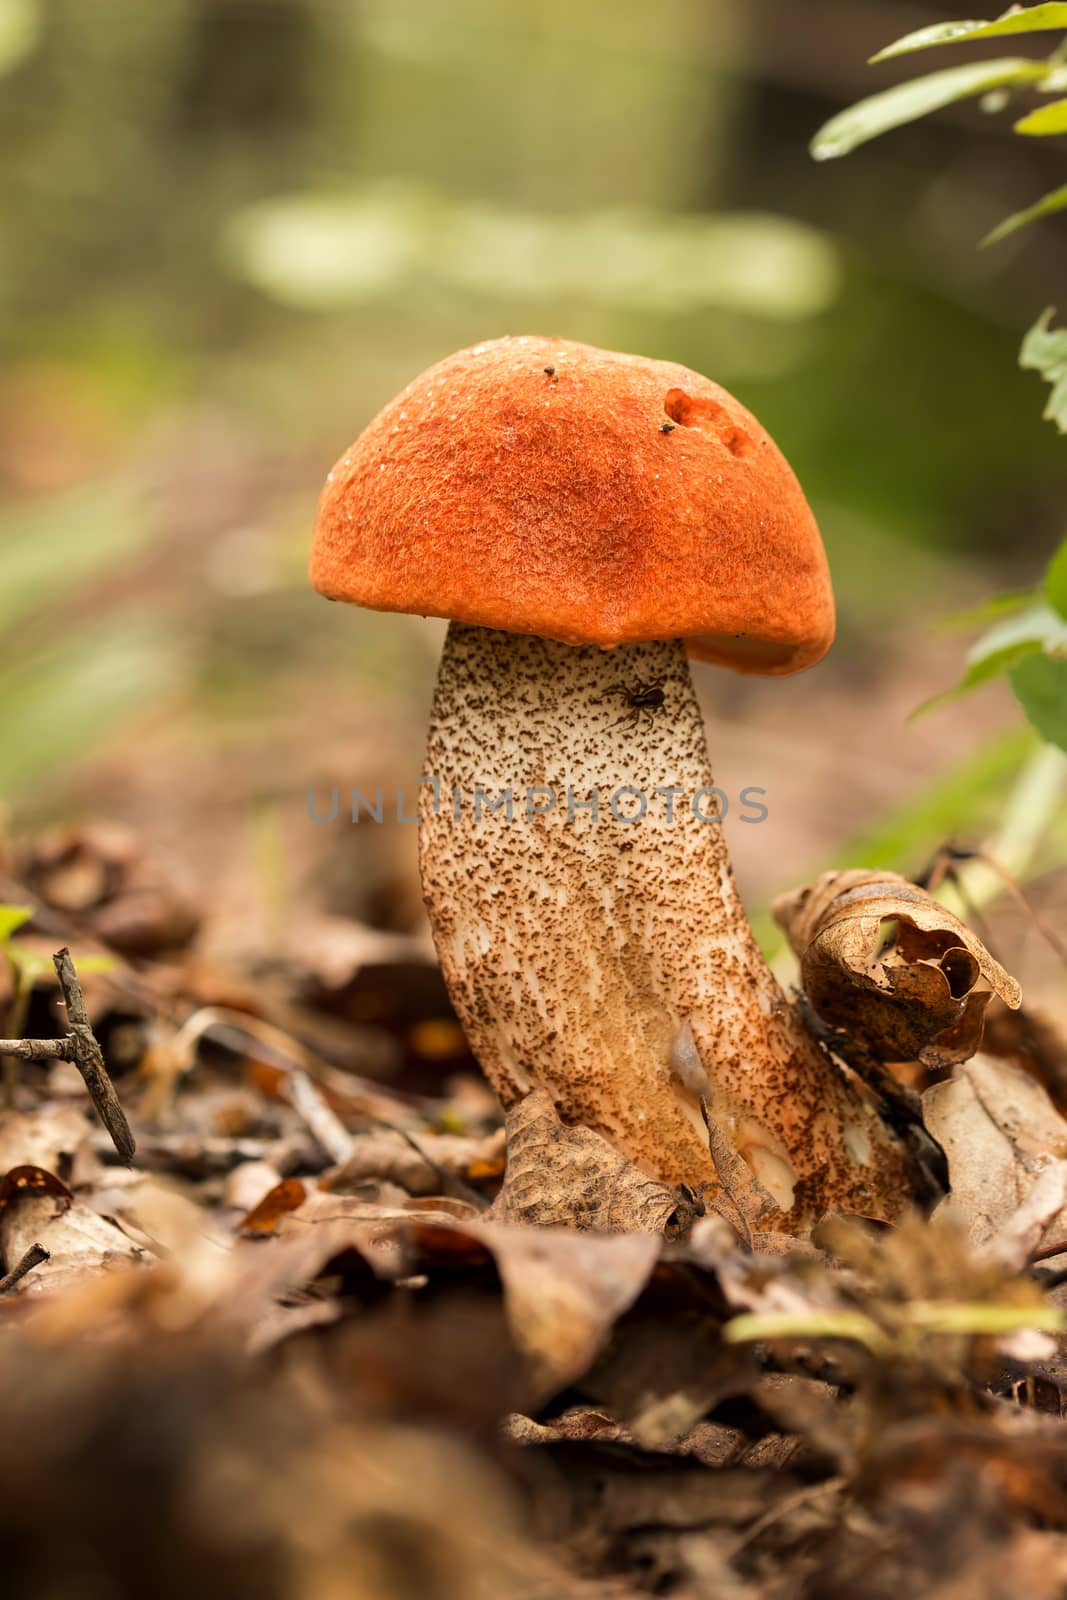 Edible mushroom species,red-capped